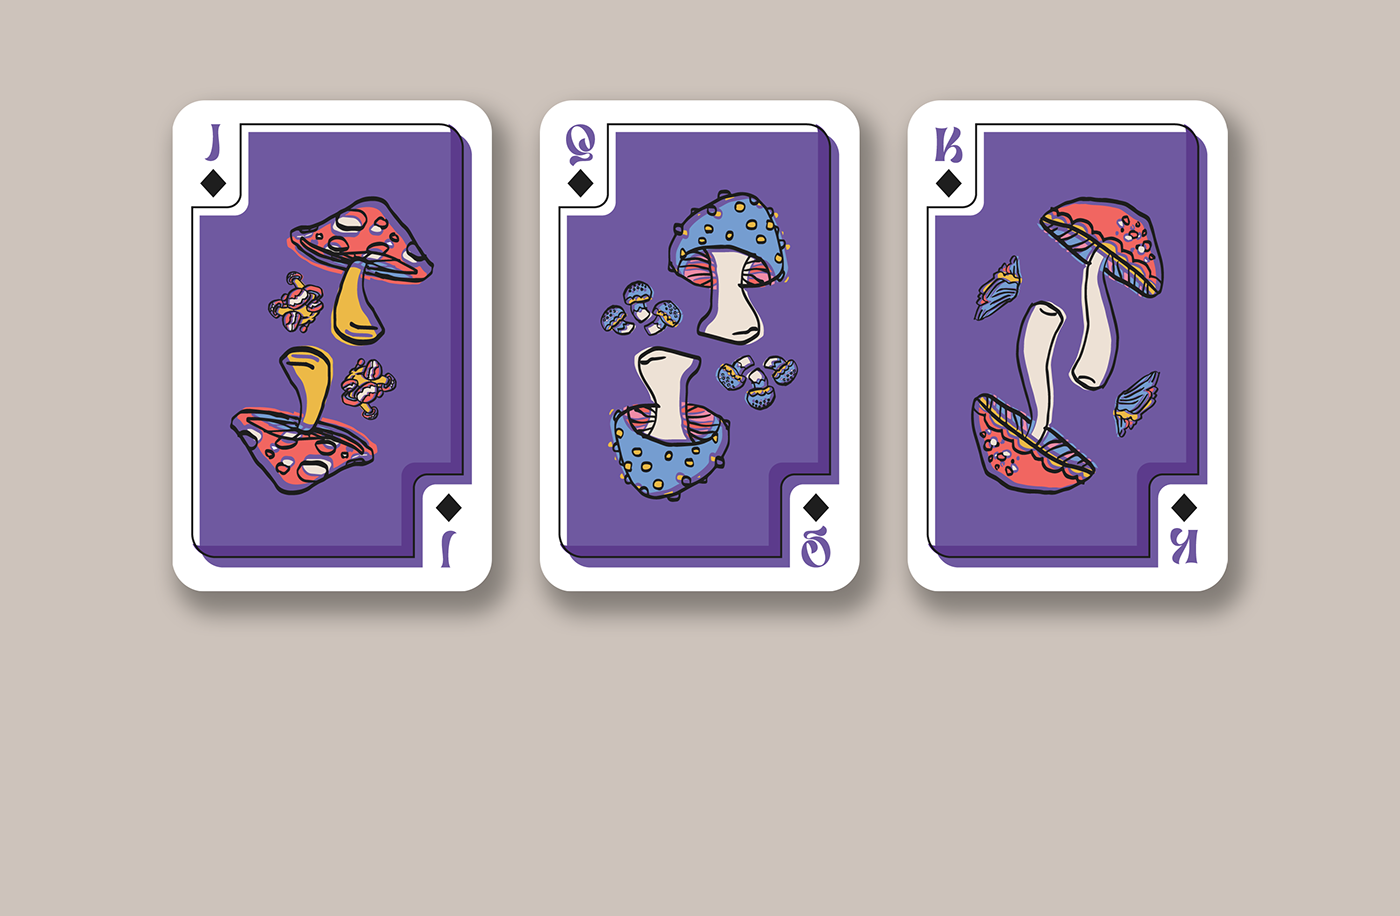 Baralho cartas cards deck